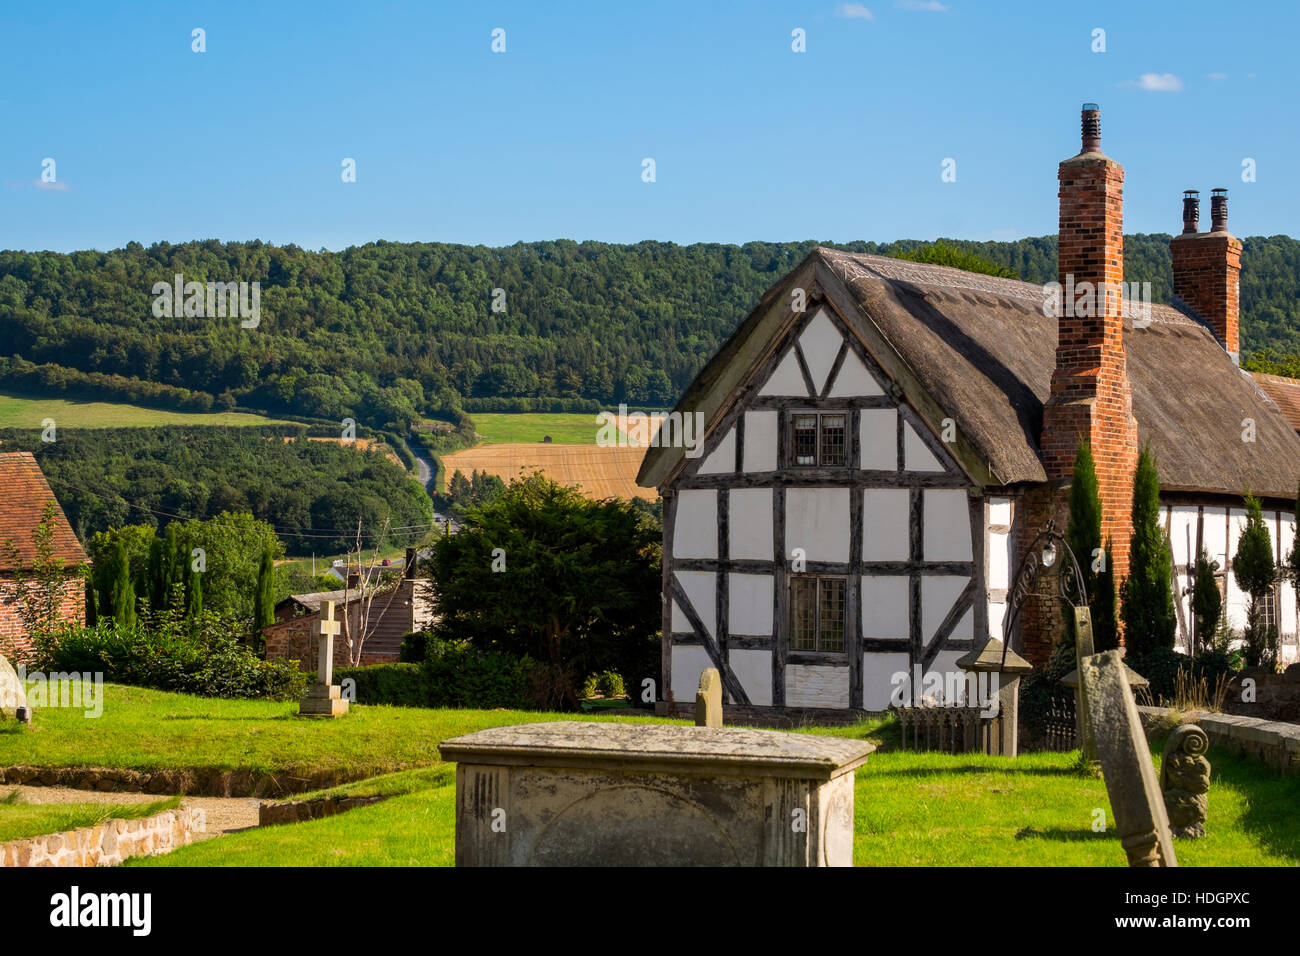 Schwarz / weiß thatched Häuschen am Harley, Shropshire, mit Wenlock Edge in den Hintergrund, England, UK Stockfoto